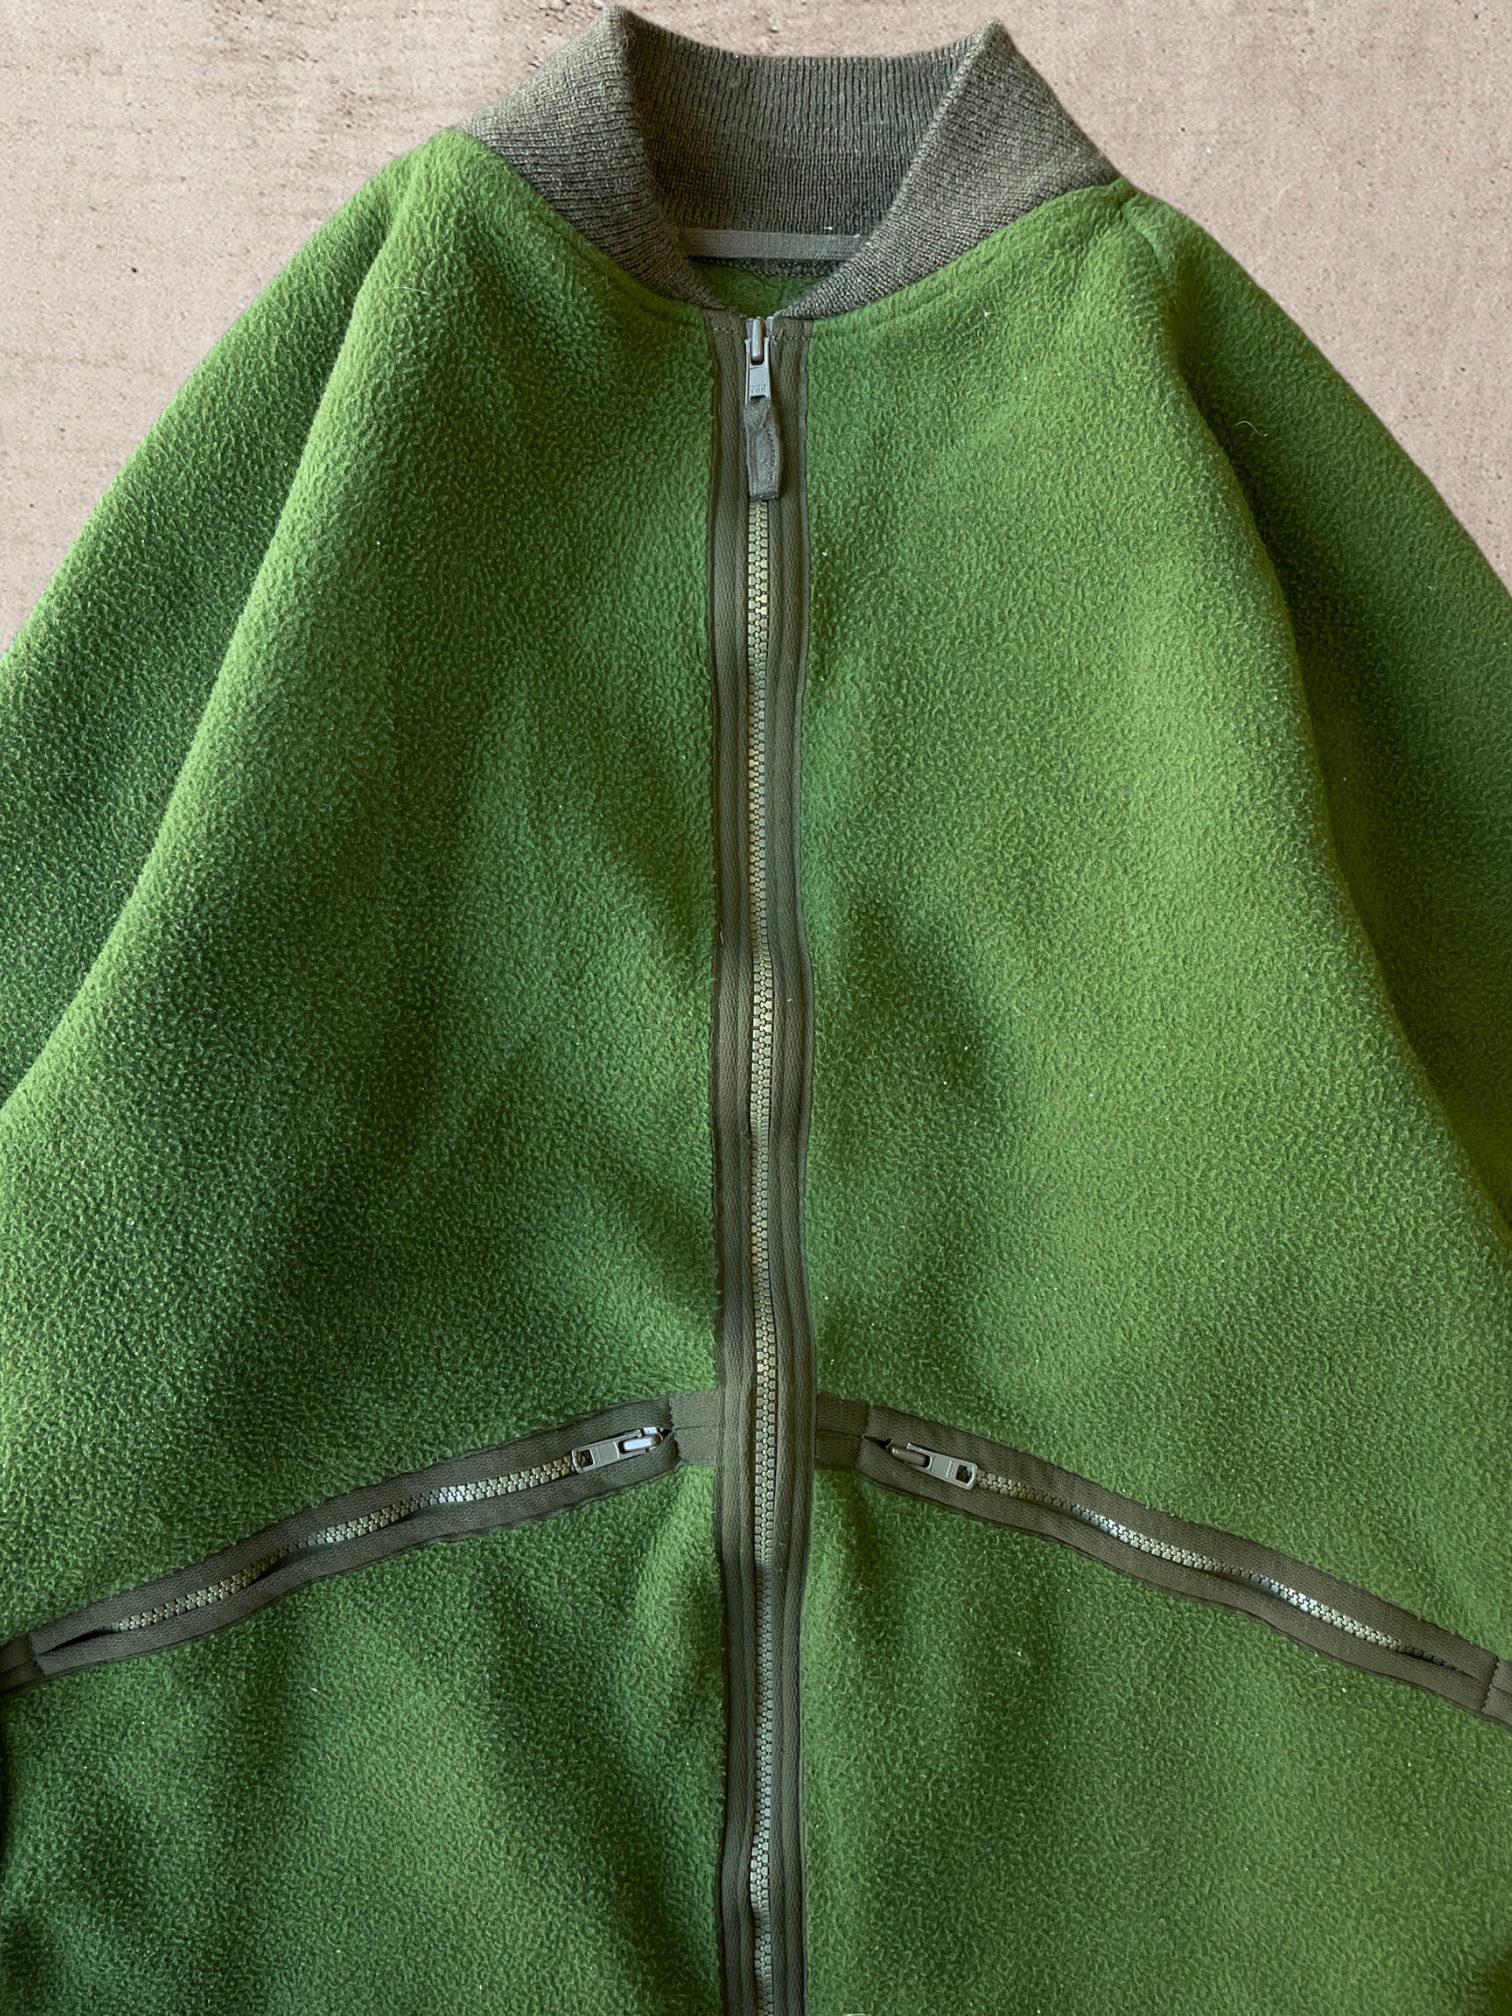 Vintage Green Zip up Fleece - Medium